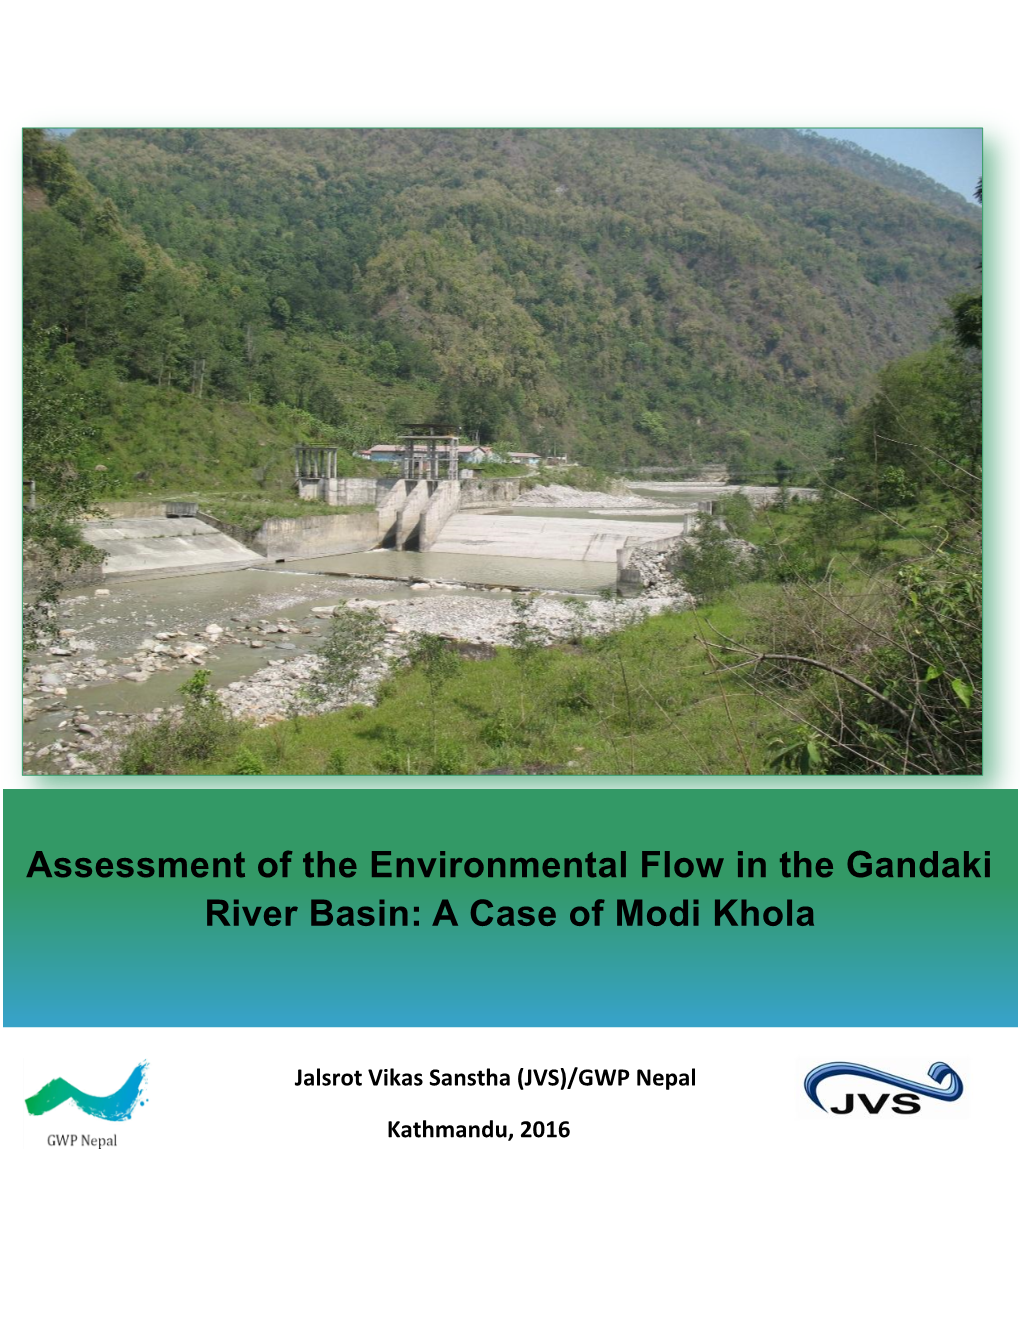 Assessment of the Environmental Flow in the Gandaki River Basin